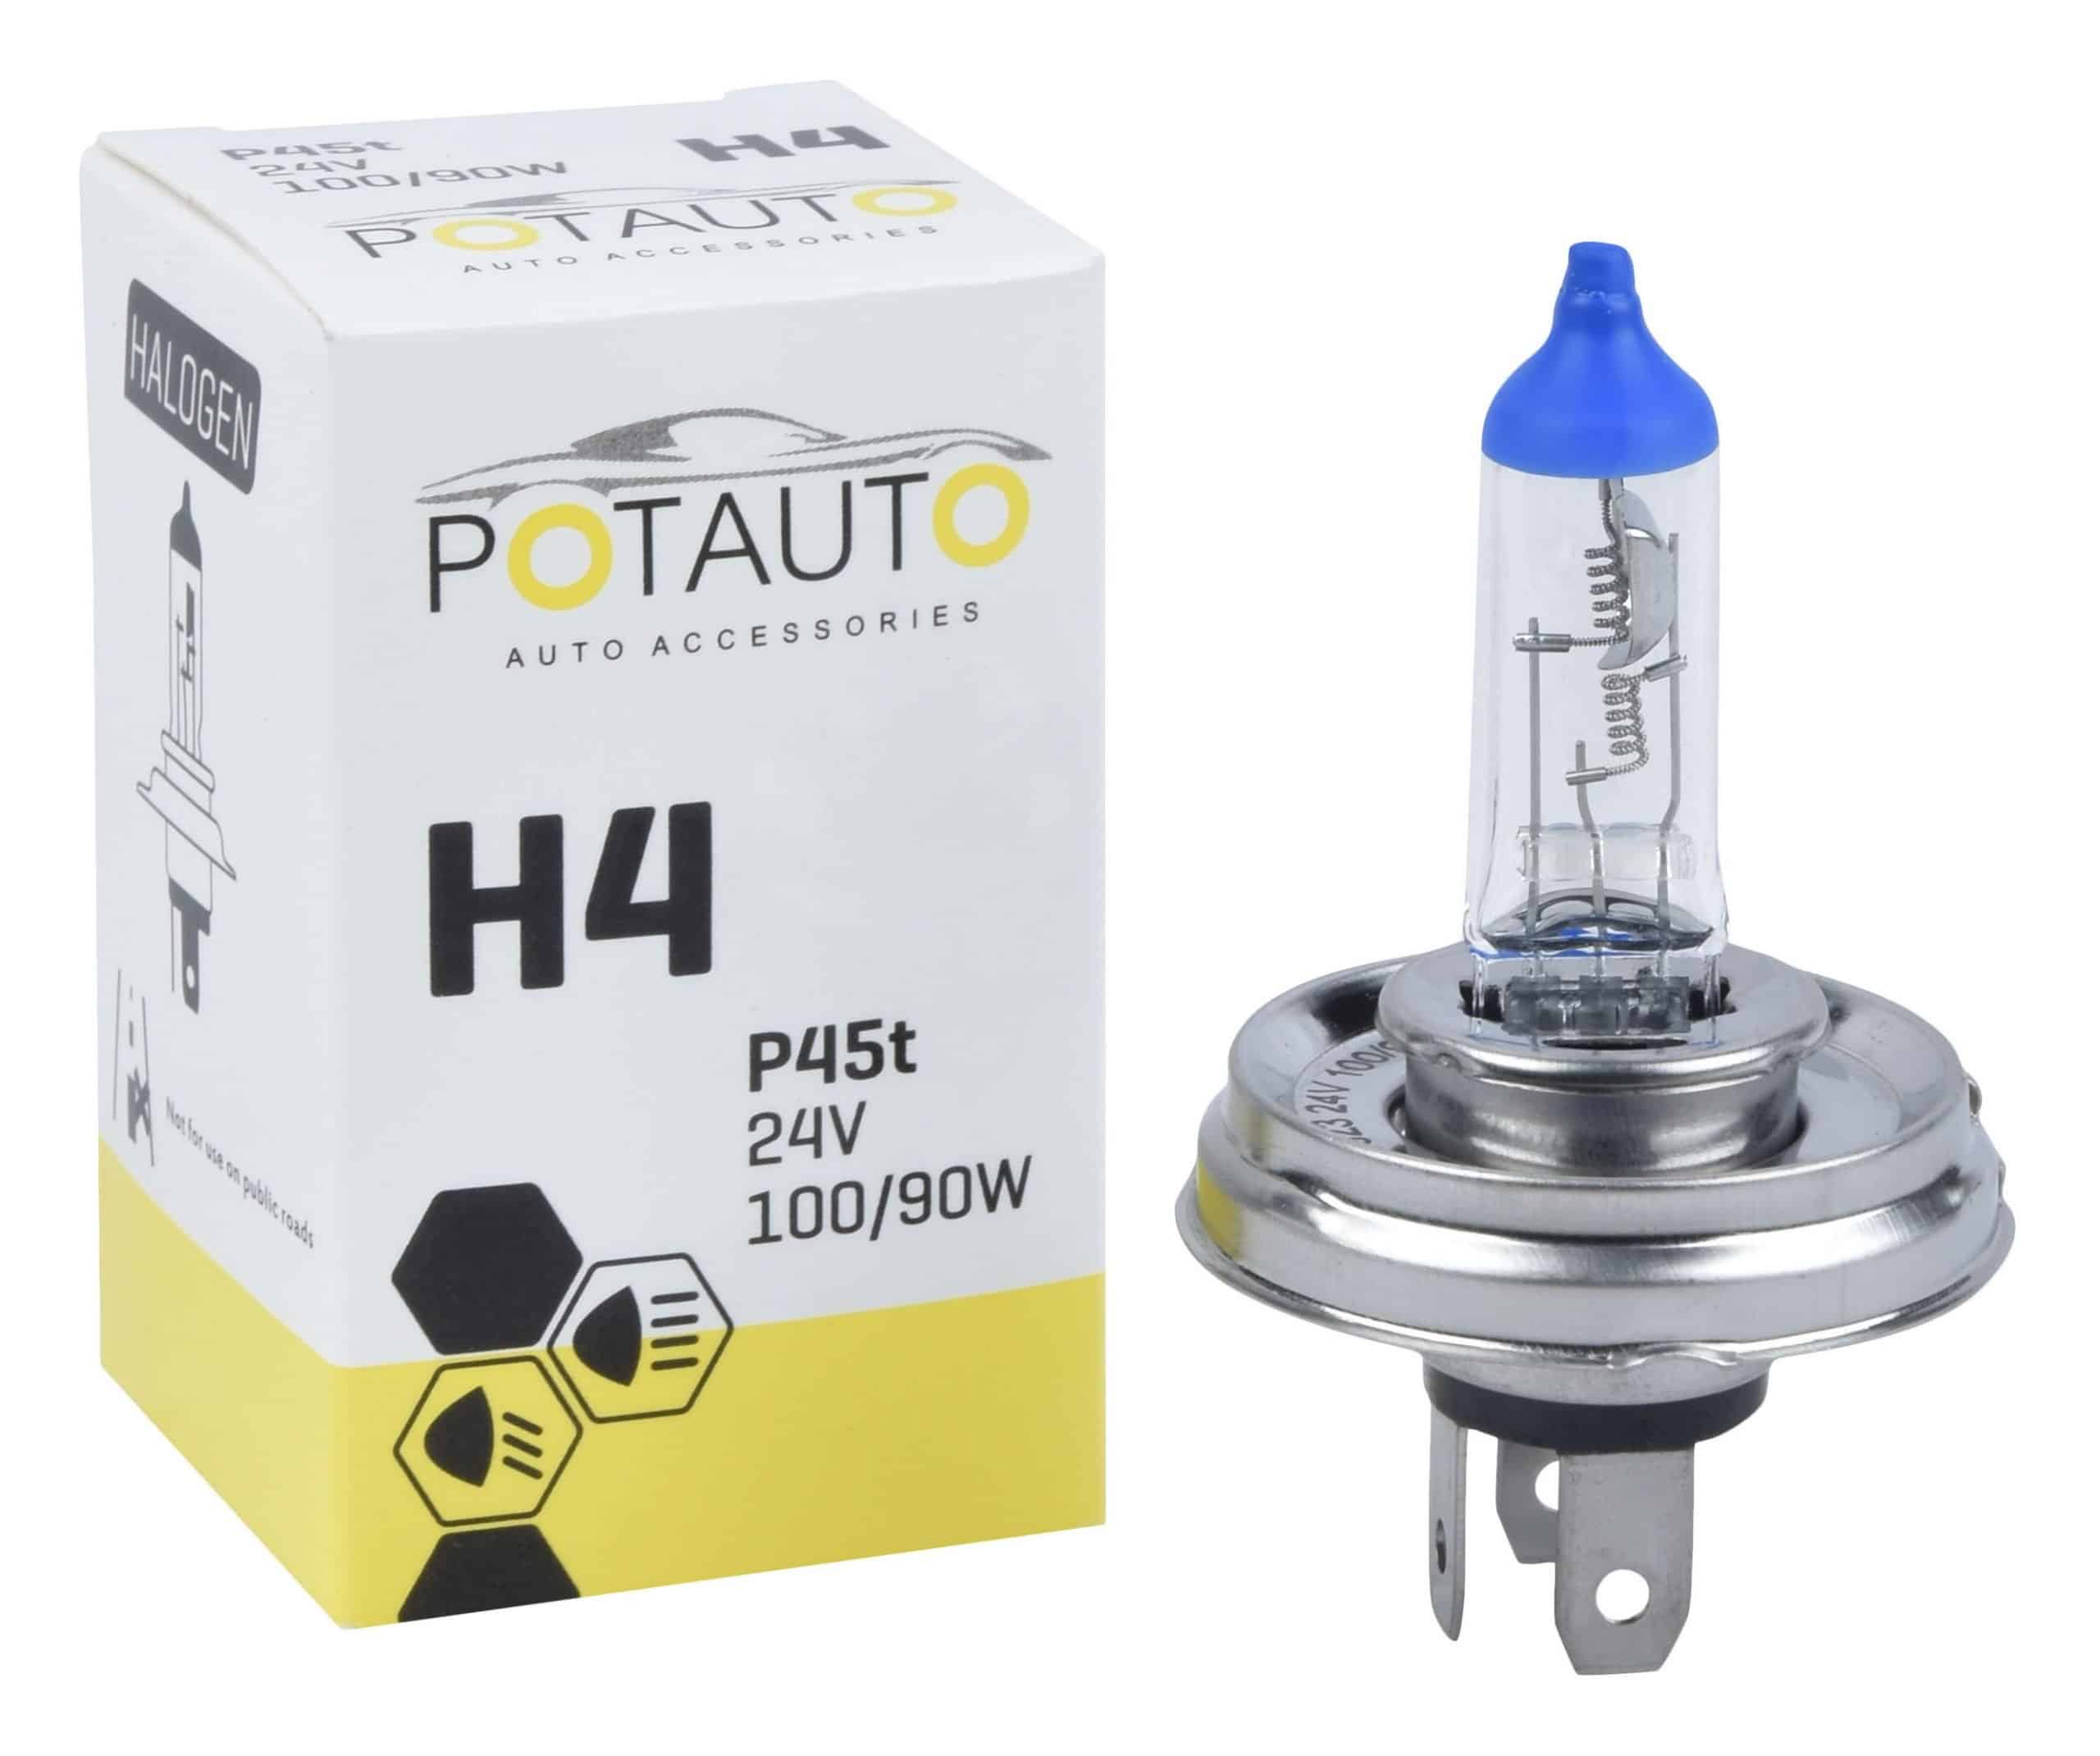 Potauto H4 Headlight Bulb P45t 24V 100/90W